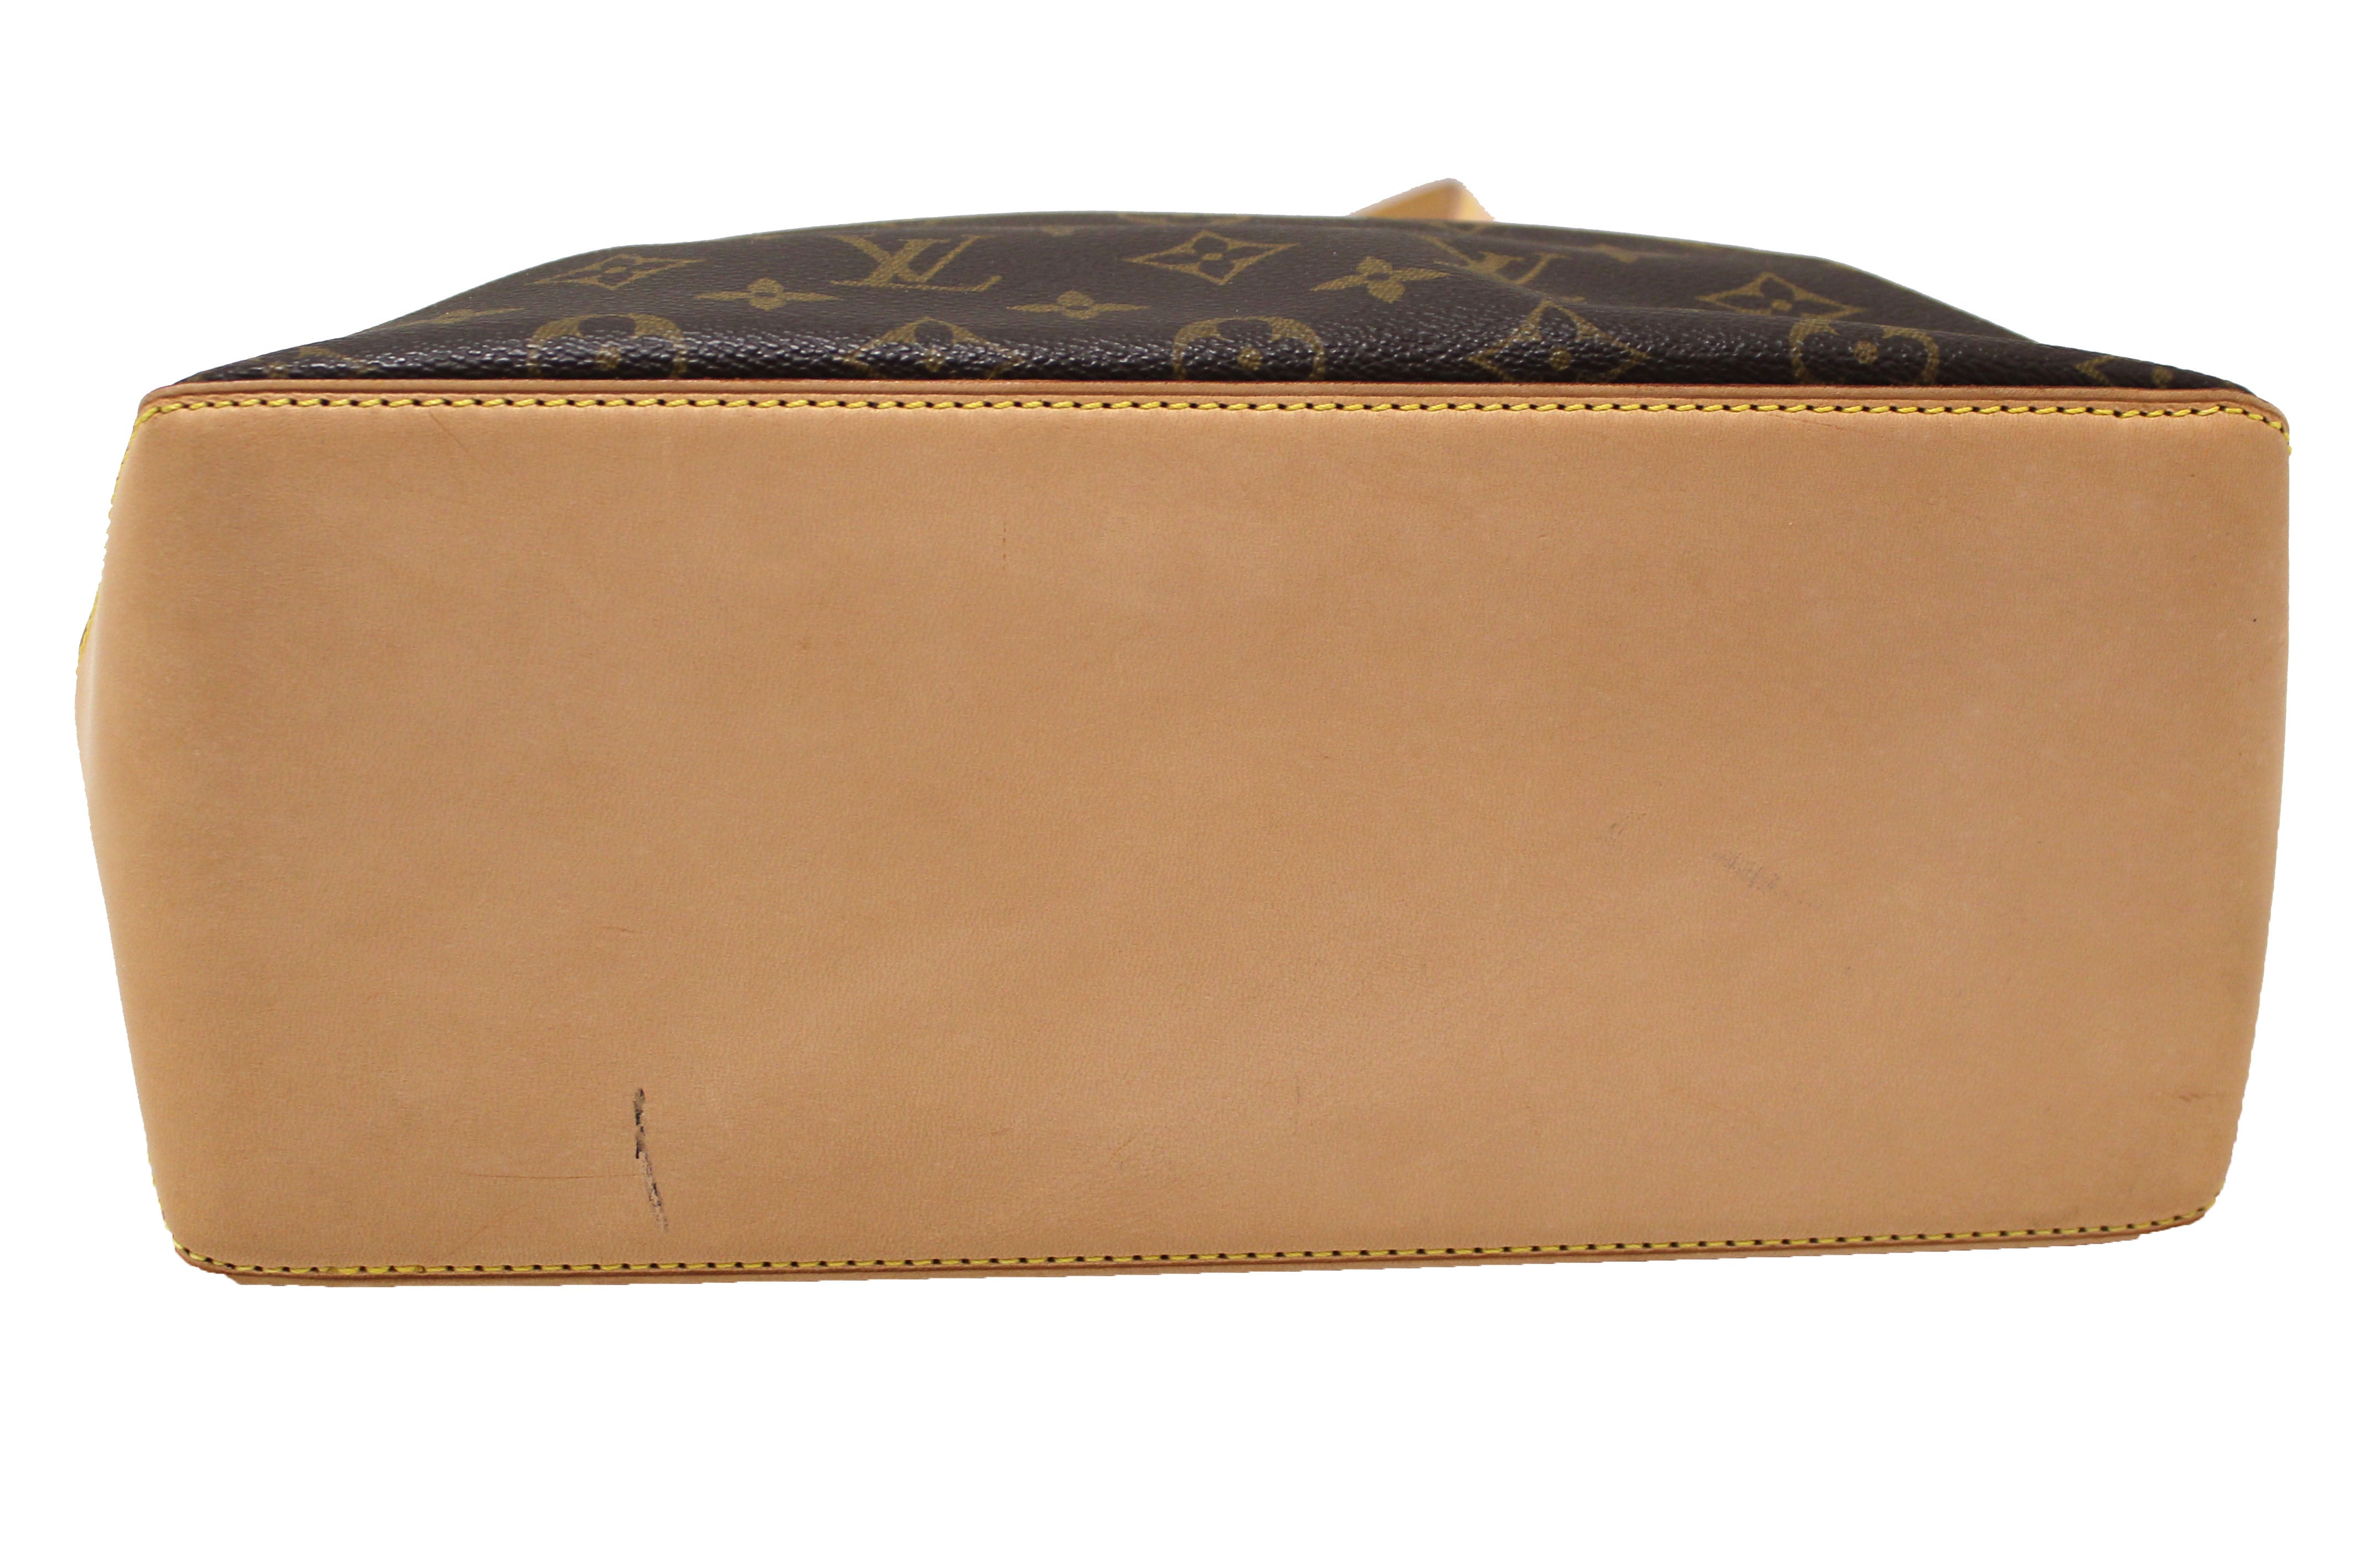 Authentic Louis Vuitton Classic Monogram Canvas Cabas Piano Tote Shoulder Bag